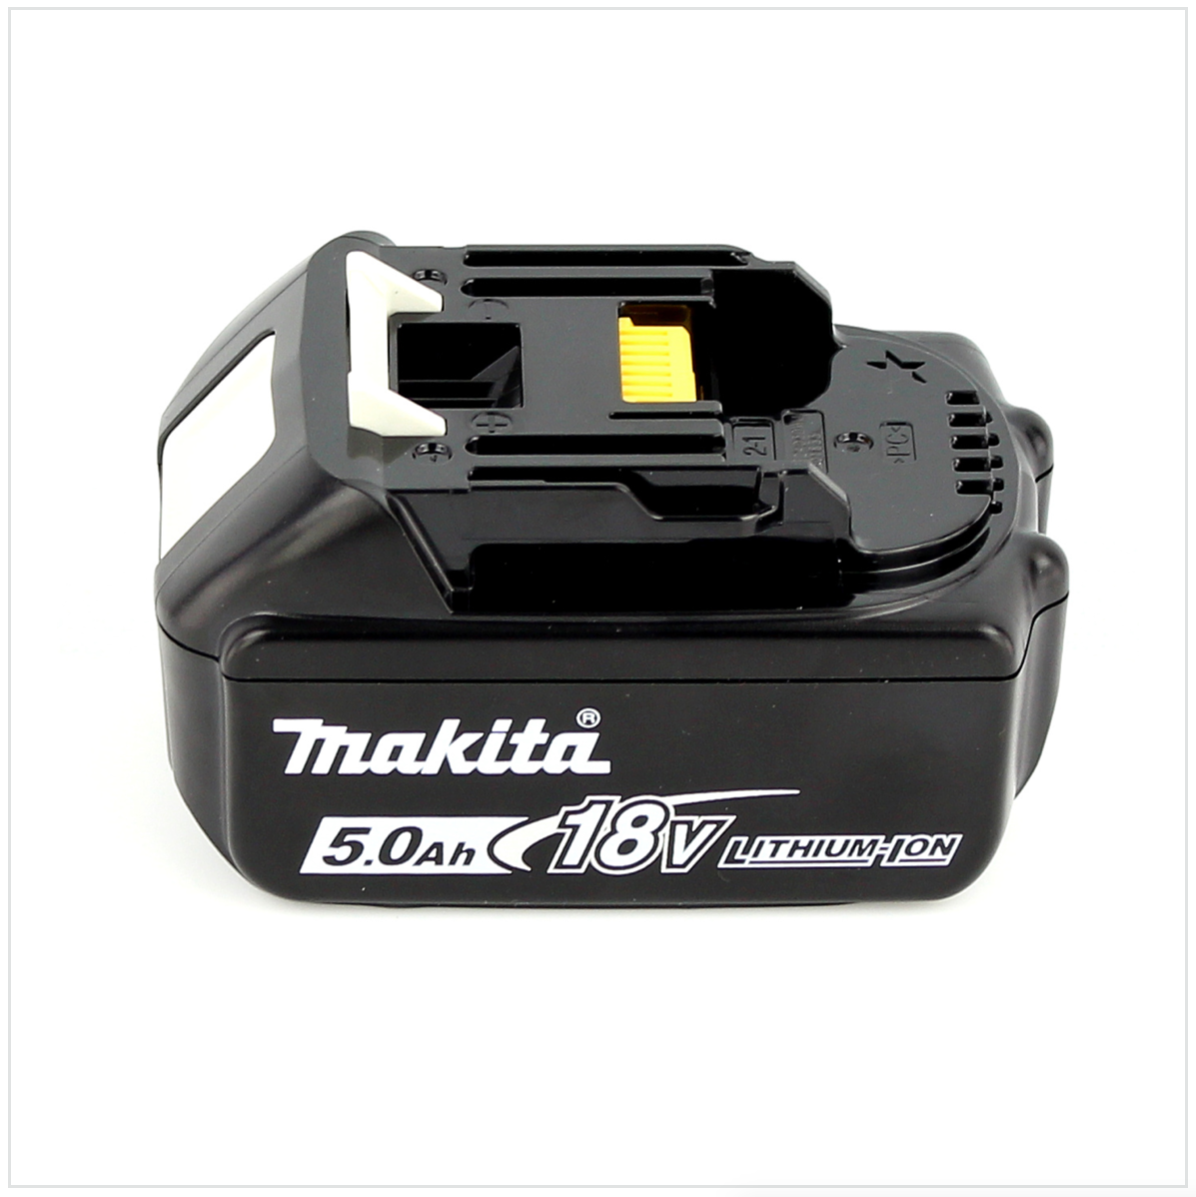 chargeur Makita DMR 110 Radio chantier avec mini USB avec batterie 5 Ah 